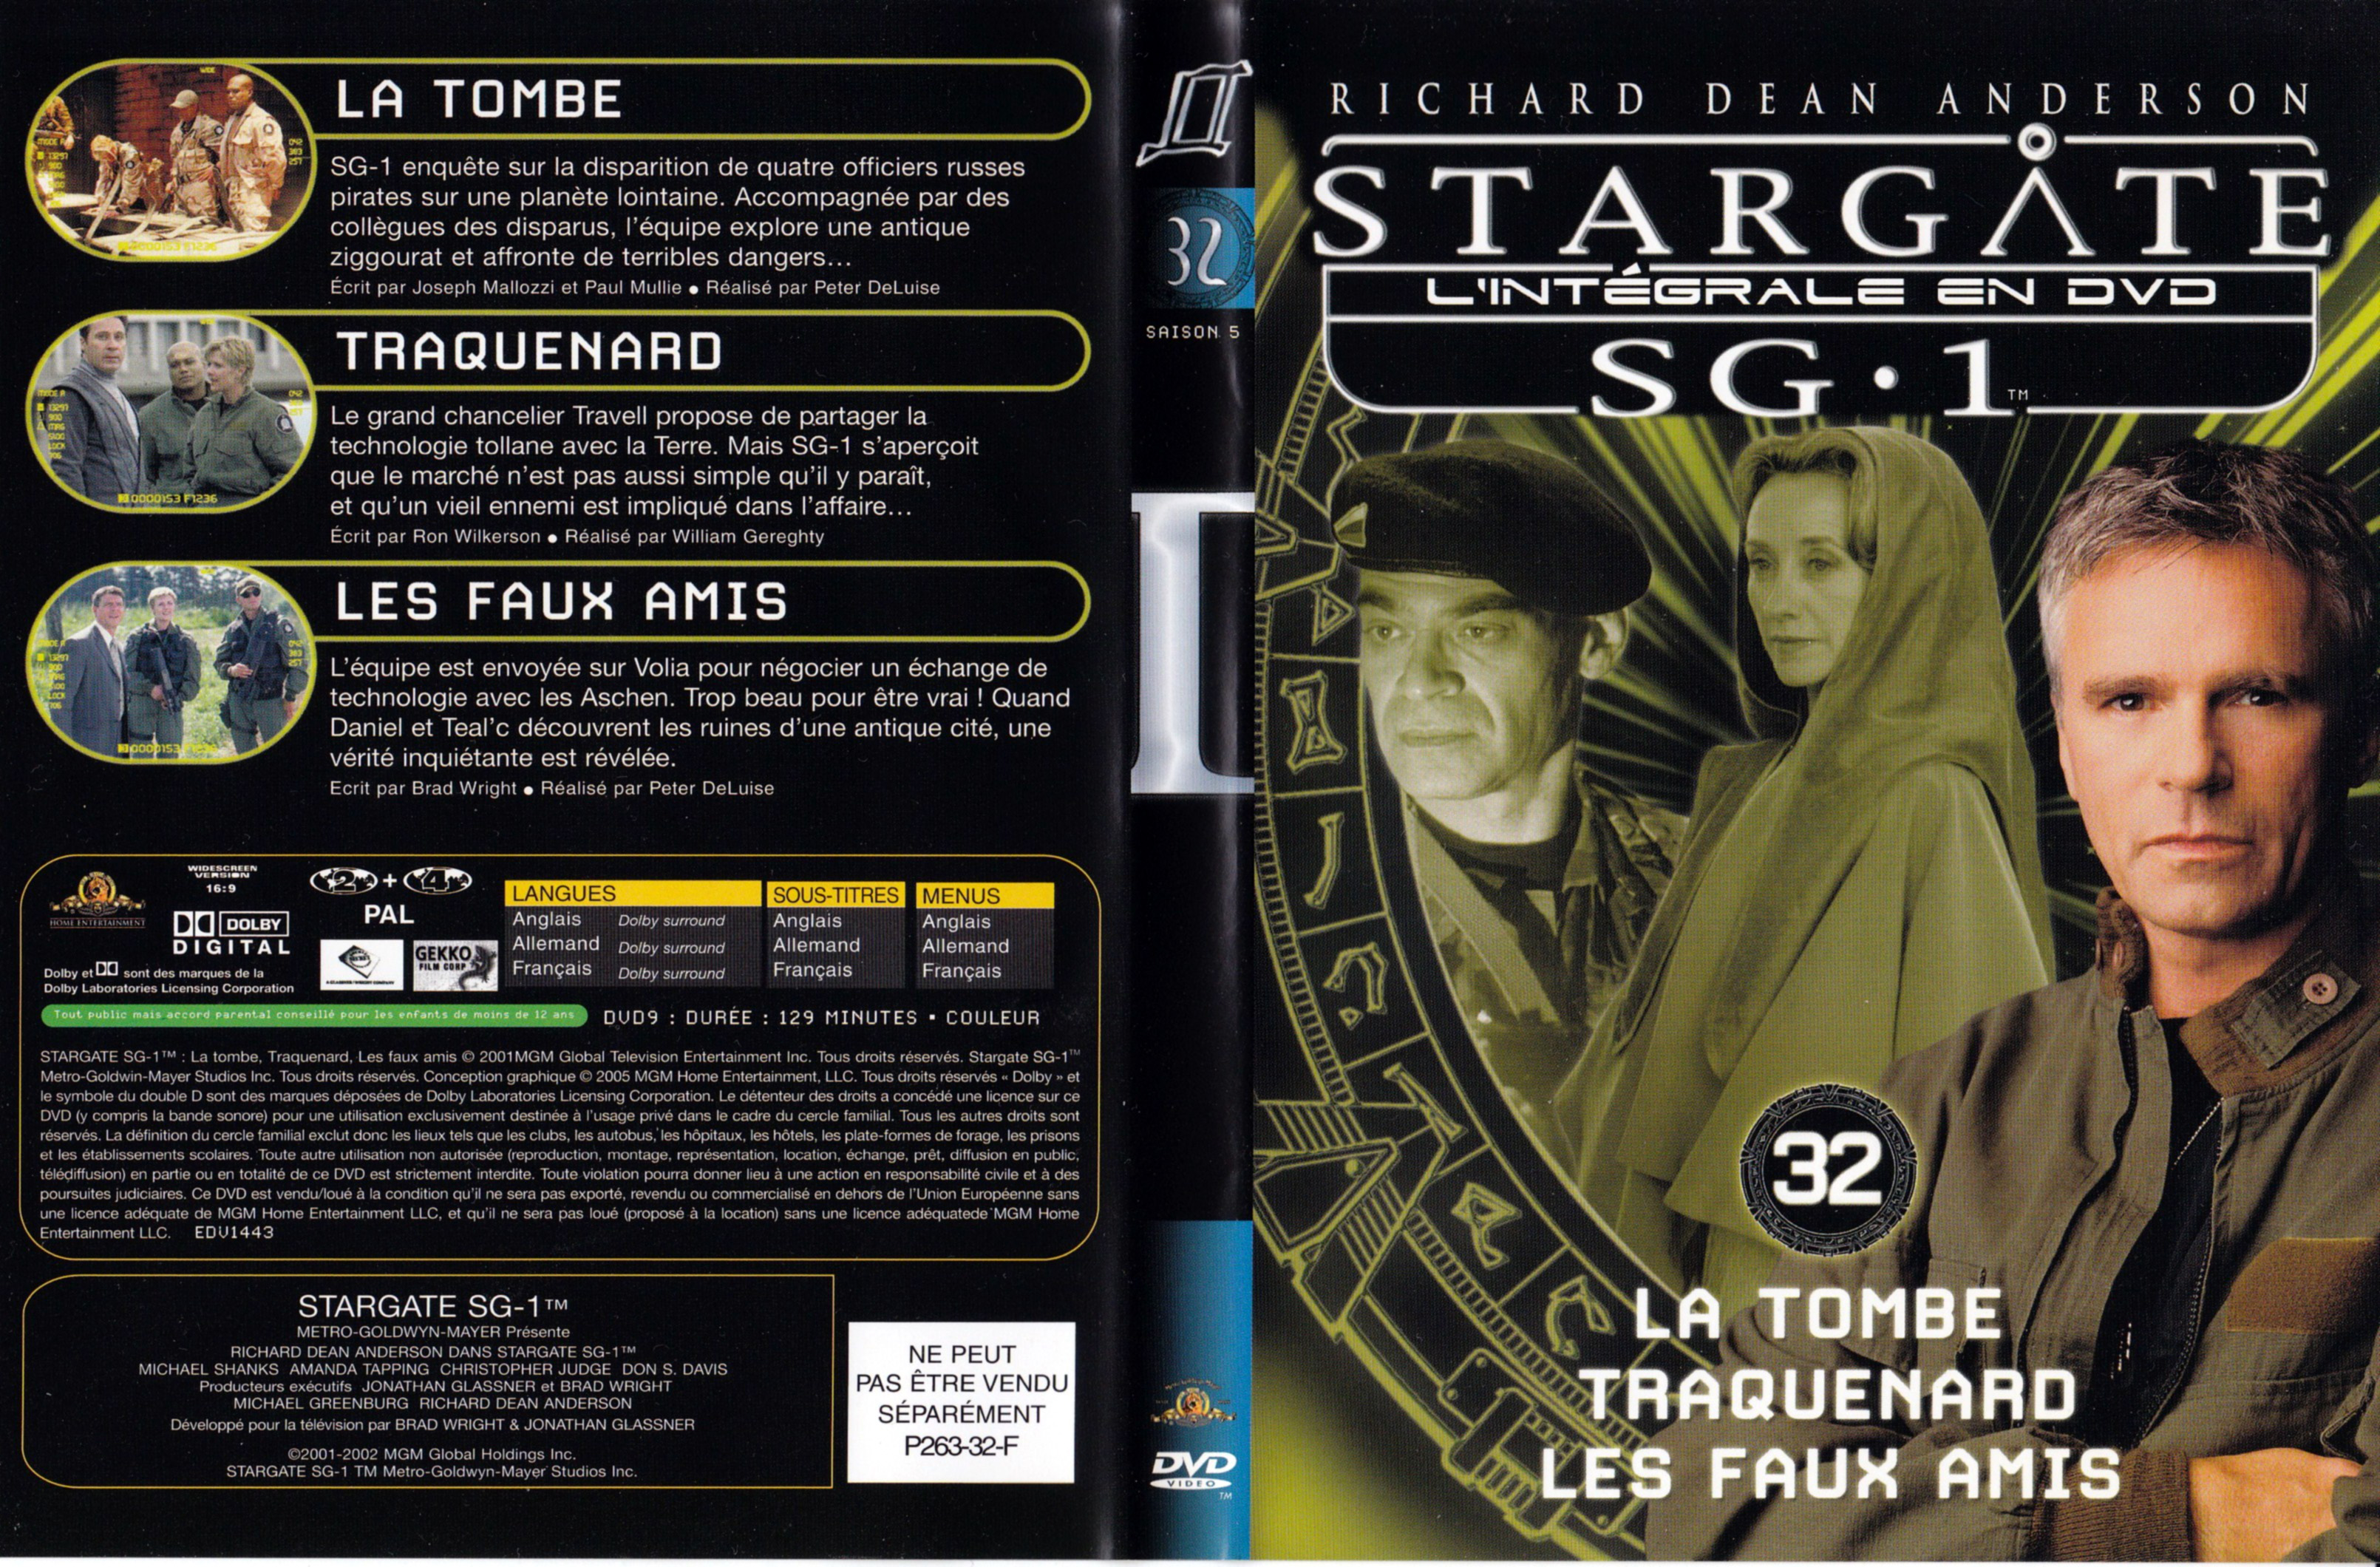 Jaquette DVD Stargate SG1 Intgrale Saison 5 vol 32